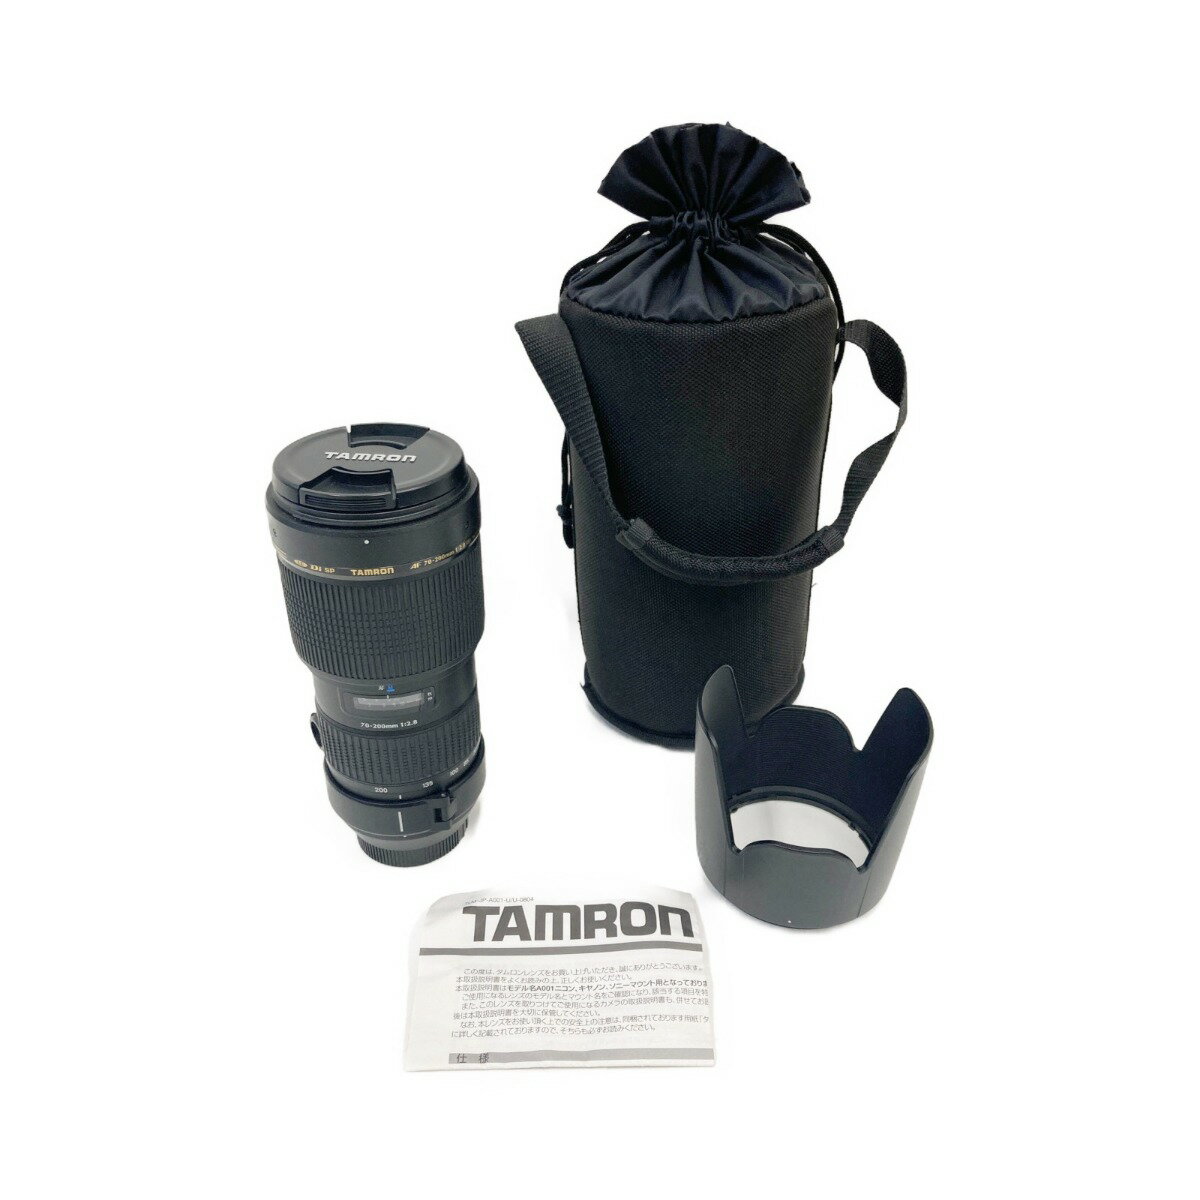 〇〇【中古】TAMRON タムロン SP AF70-200mm F/2.8 Di LD [IF] MACRO ソフトケース付ニコンマウント A001 交換レンズ Bランク